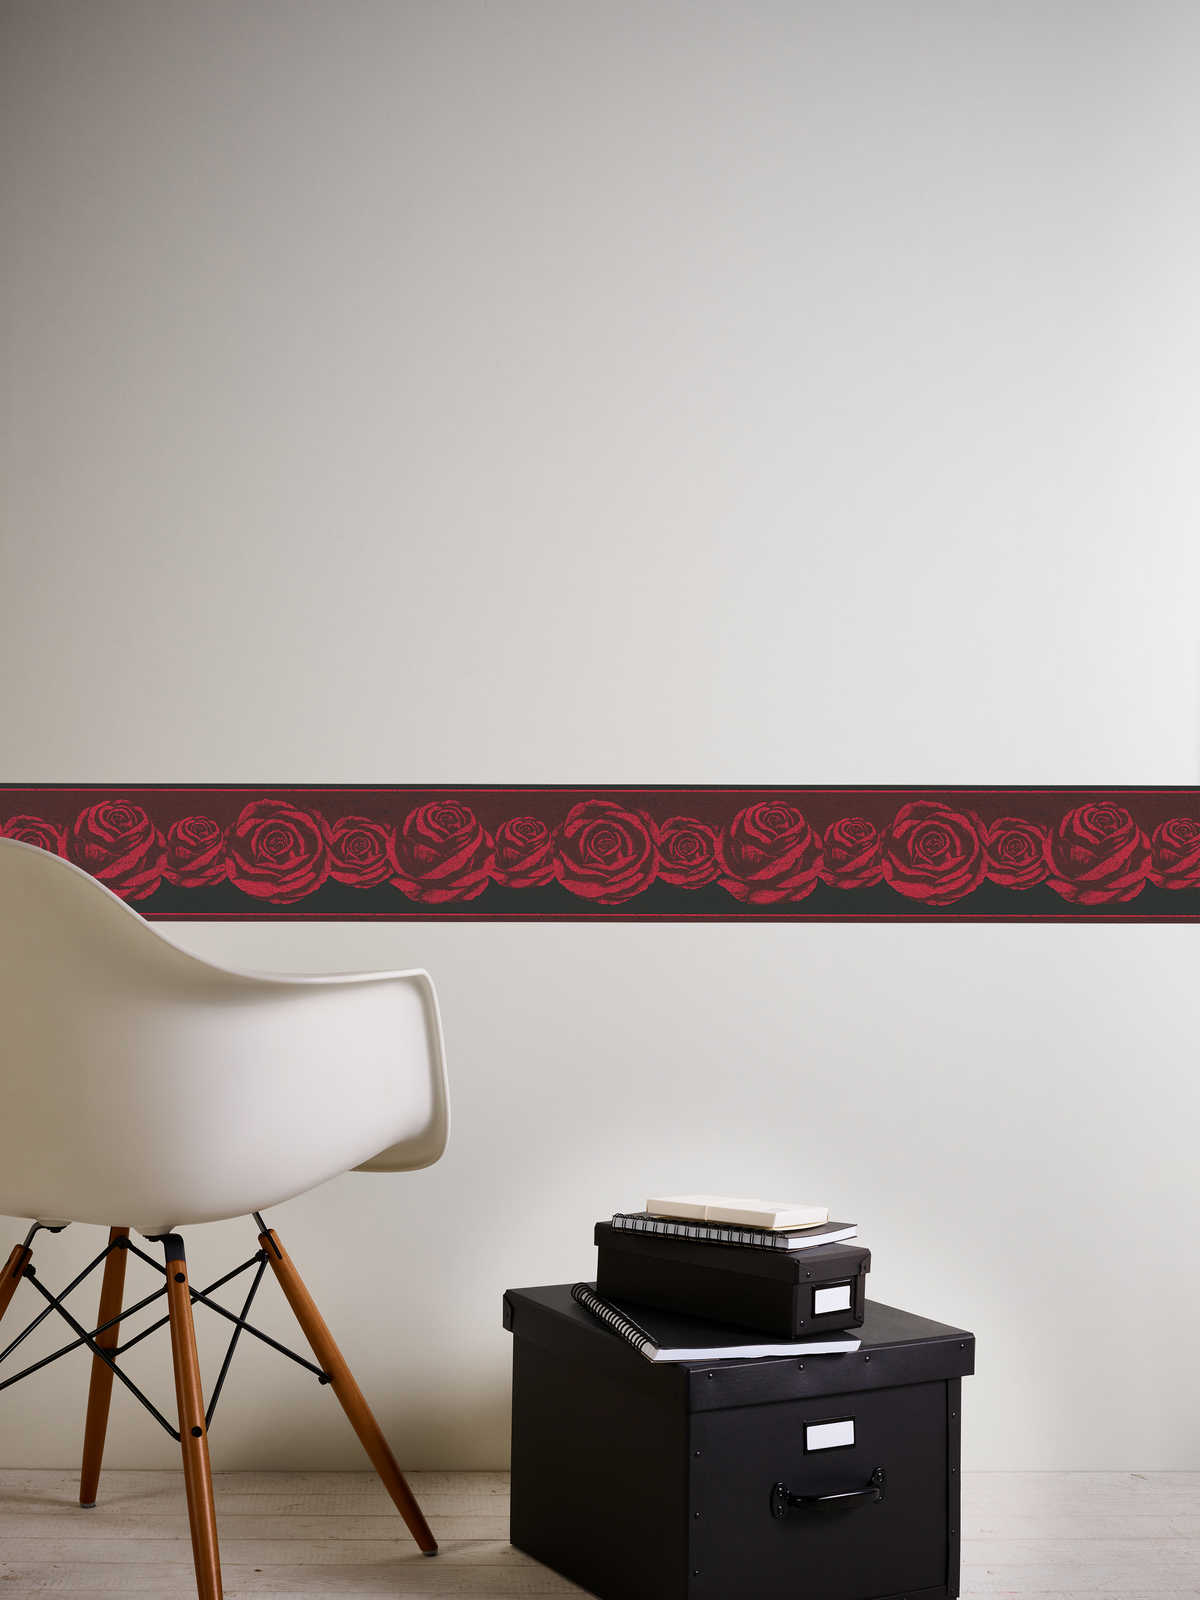             Tapetenbordüre Schwarz-Rot mit Rosen Muster
        